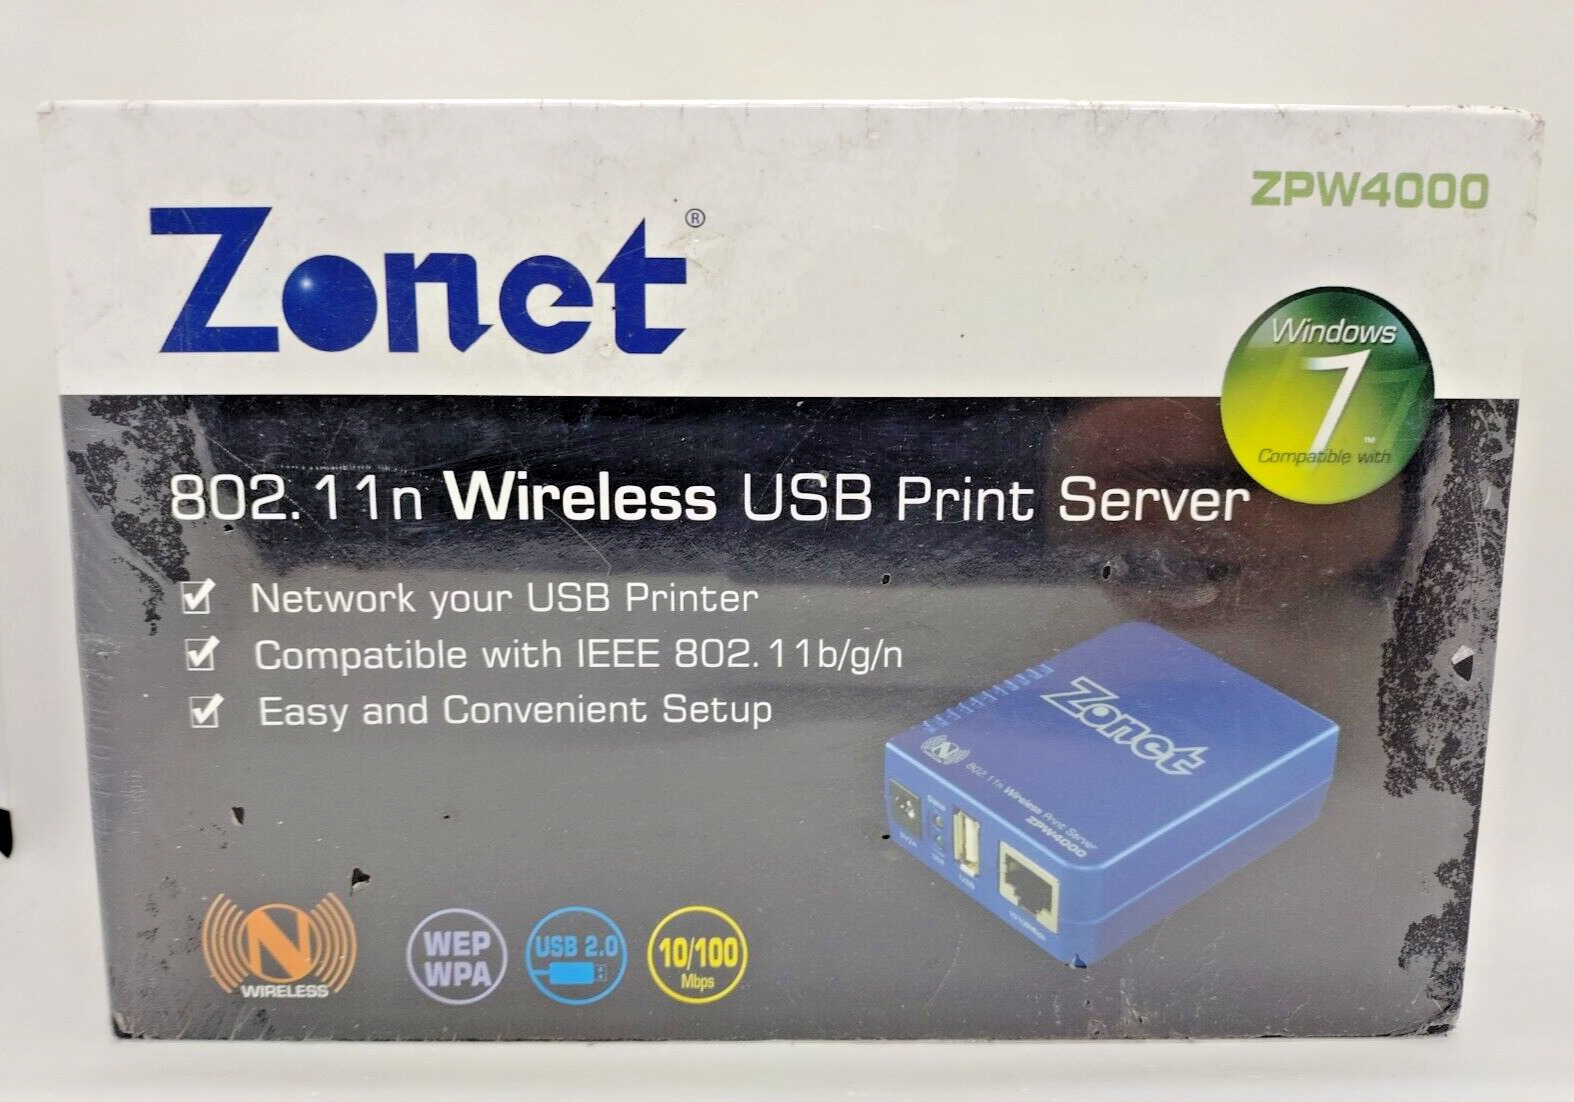 Zonet 802.11n Wireless USB Print Server ZPW4000